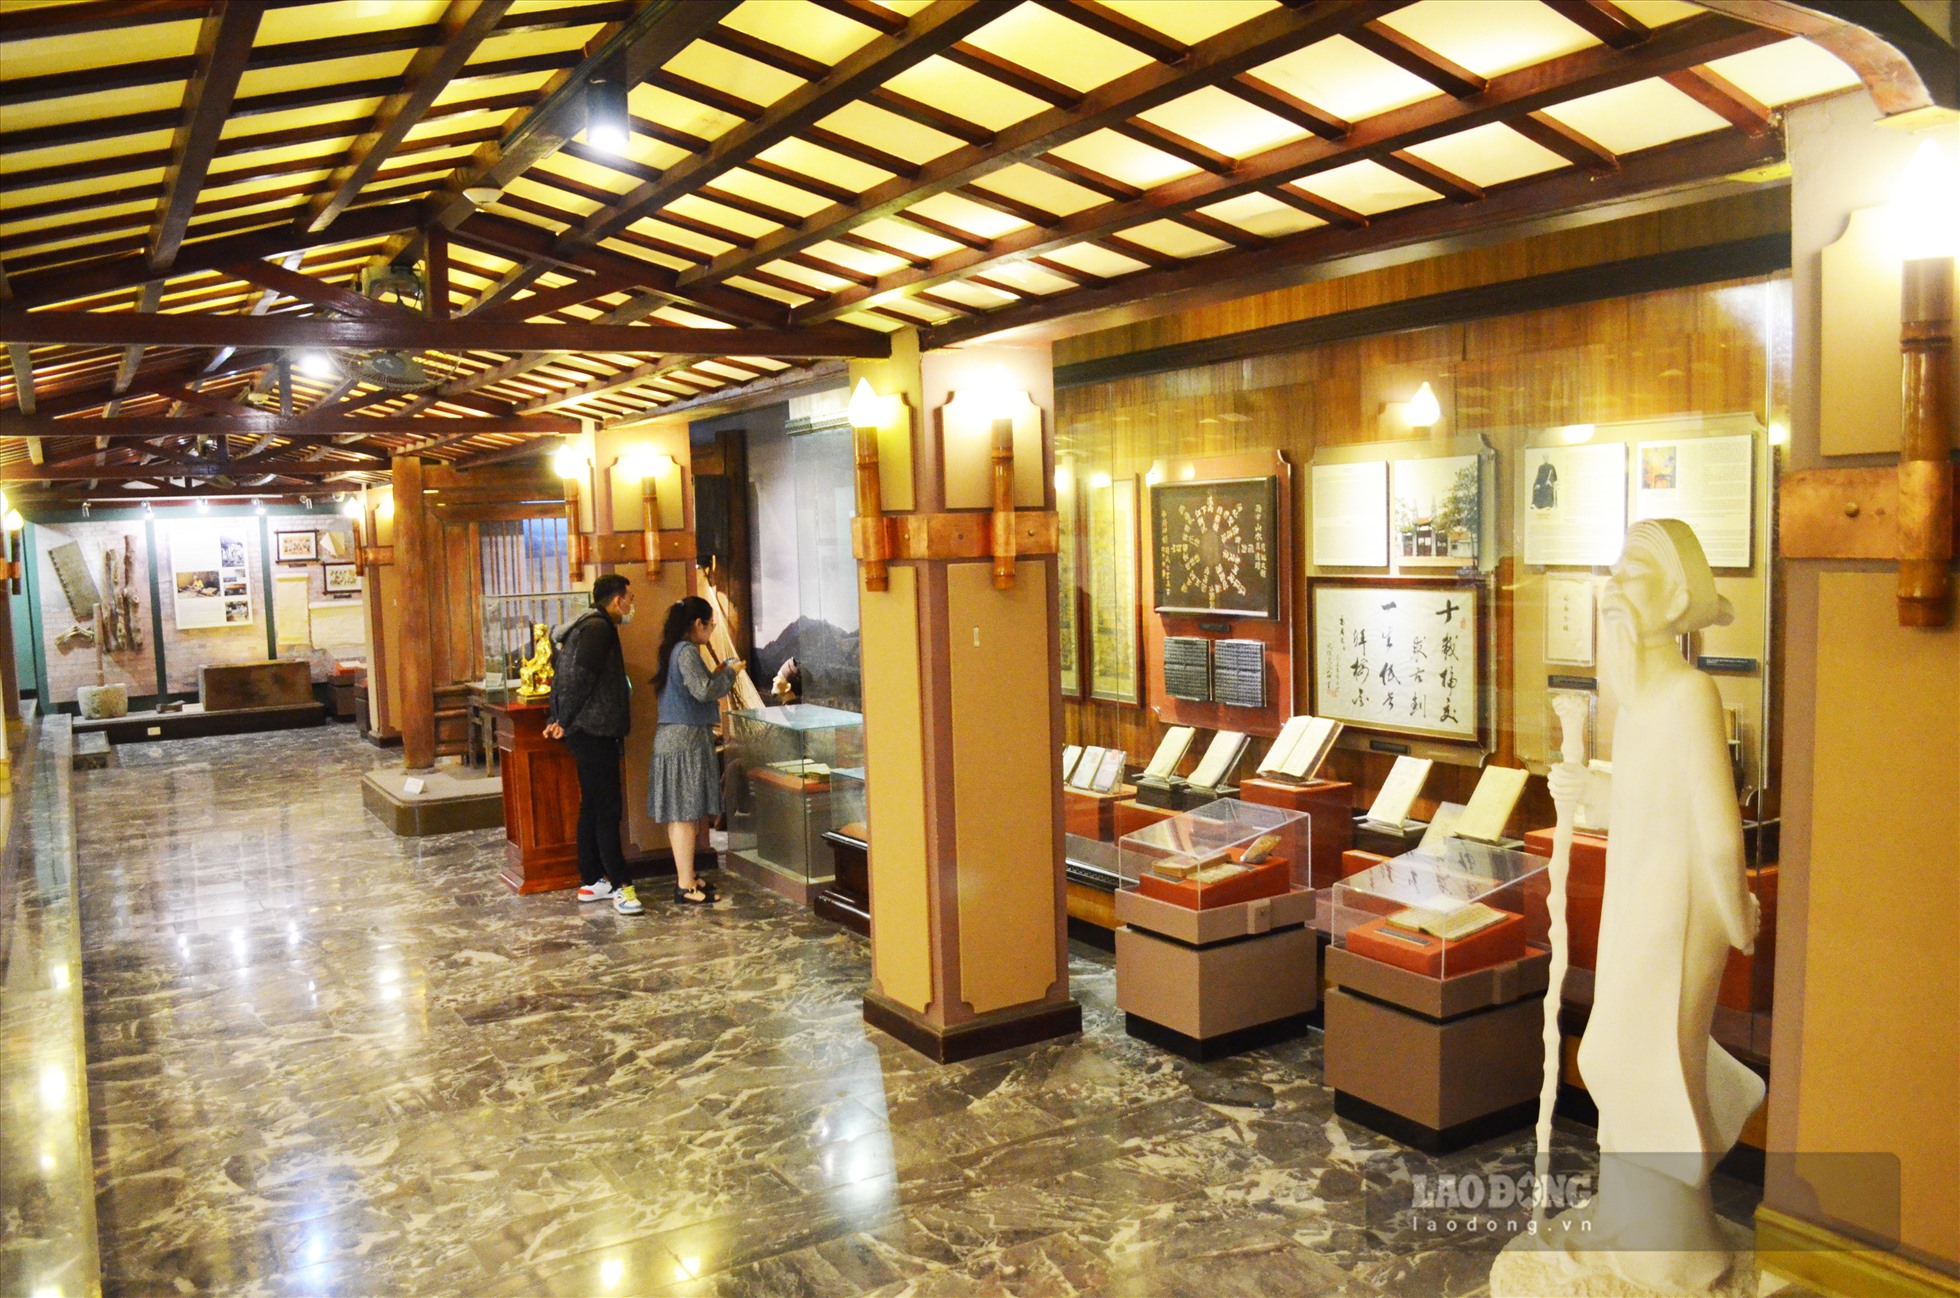 Bảo tàng gồm 2 phần trưng bày chính, gồm trưng bày ngoài trời và trong nhà, lưu giữ rất nhiều tư liệu hiện vật về các nhà văn nổi tiếng trong tiến trình phát triển của lịch sử văn học Việt Nam.